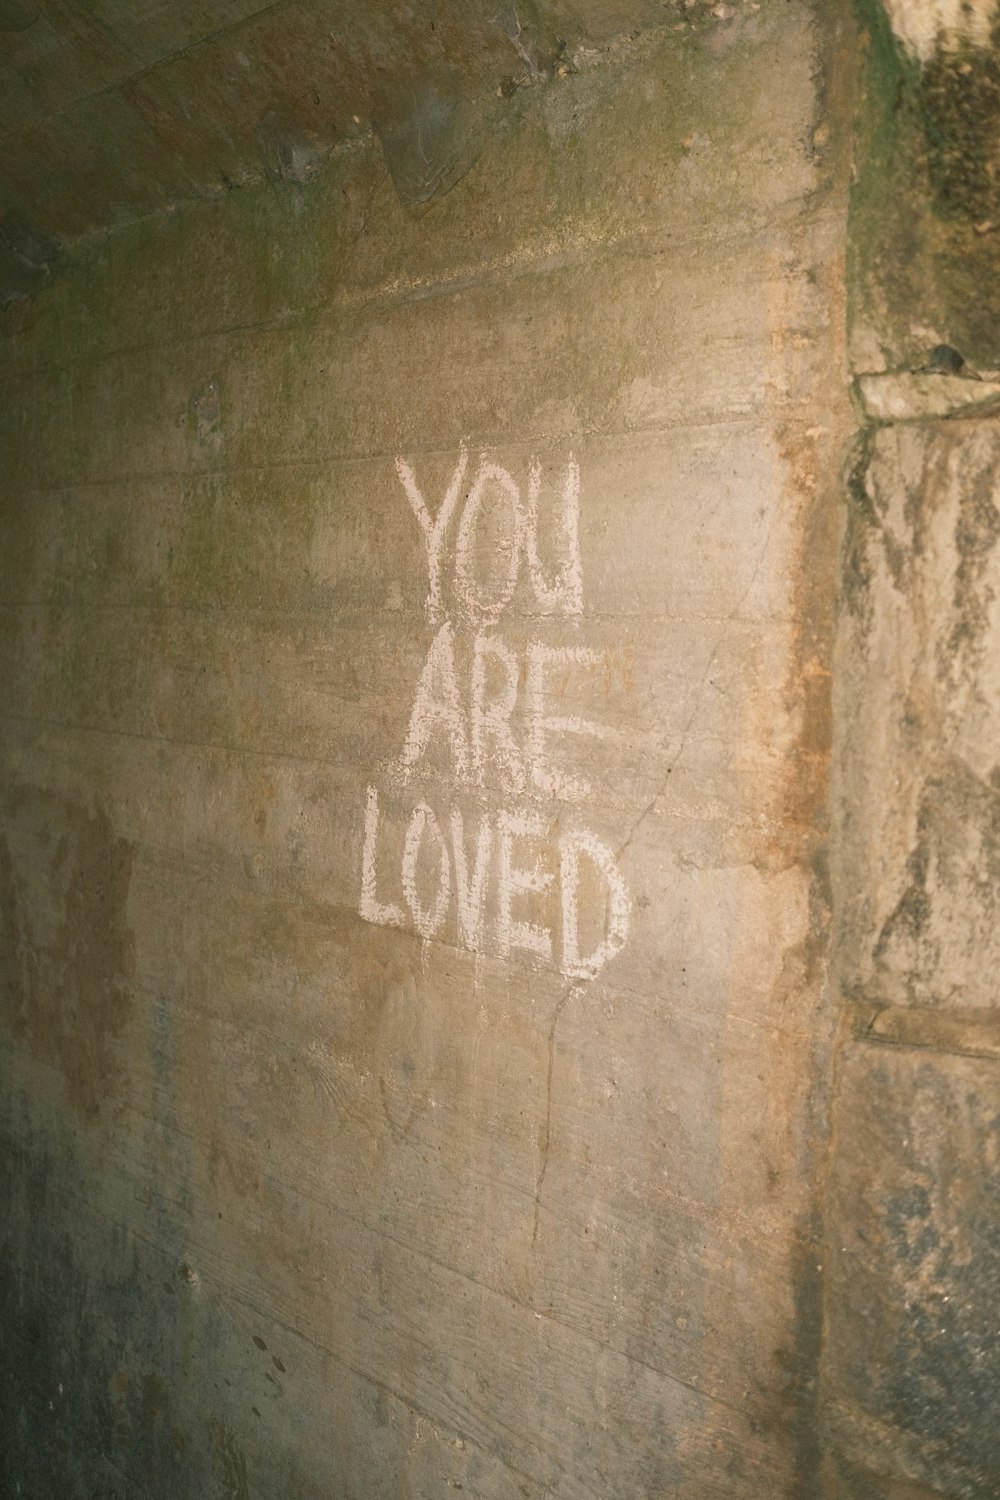 sei amato scritto sul lato di un muro